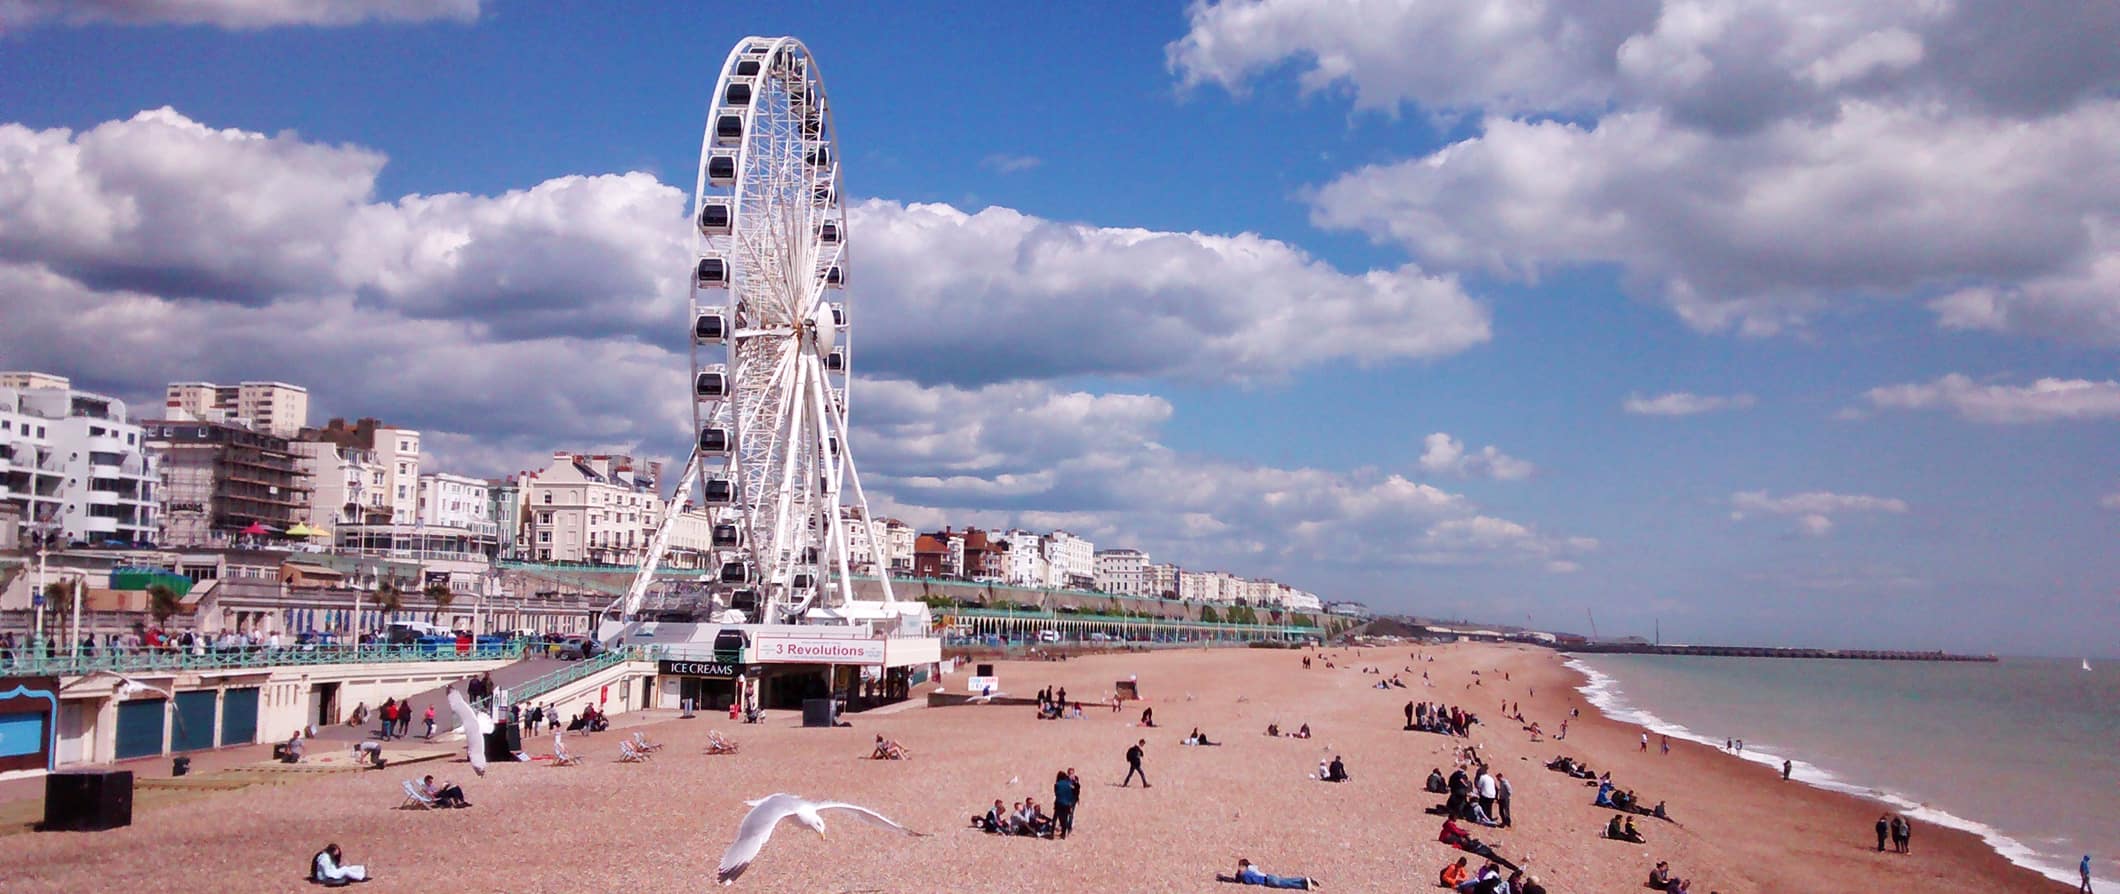 Vista de Brighton Beach e Ferris Wheel na costa em Sunny Brighton, Gr ã-Bretanha